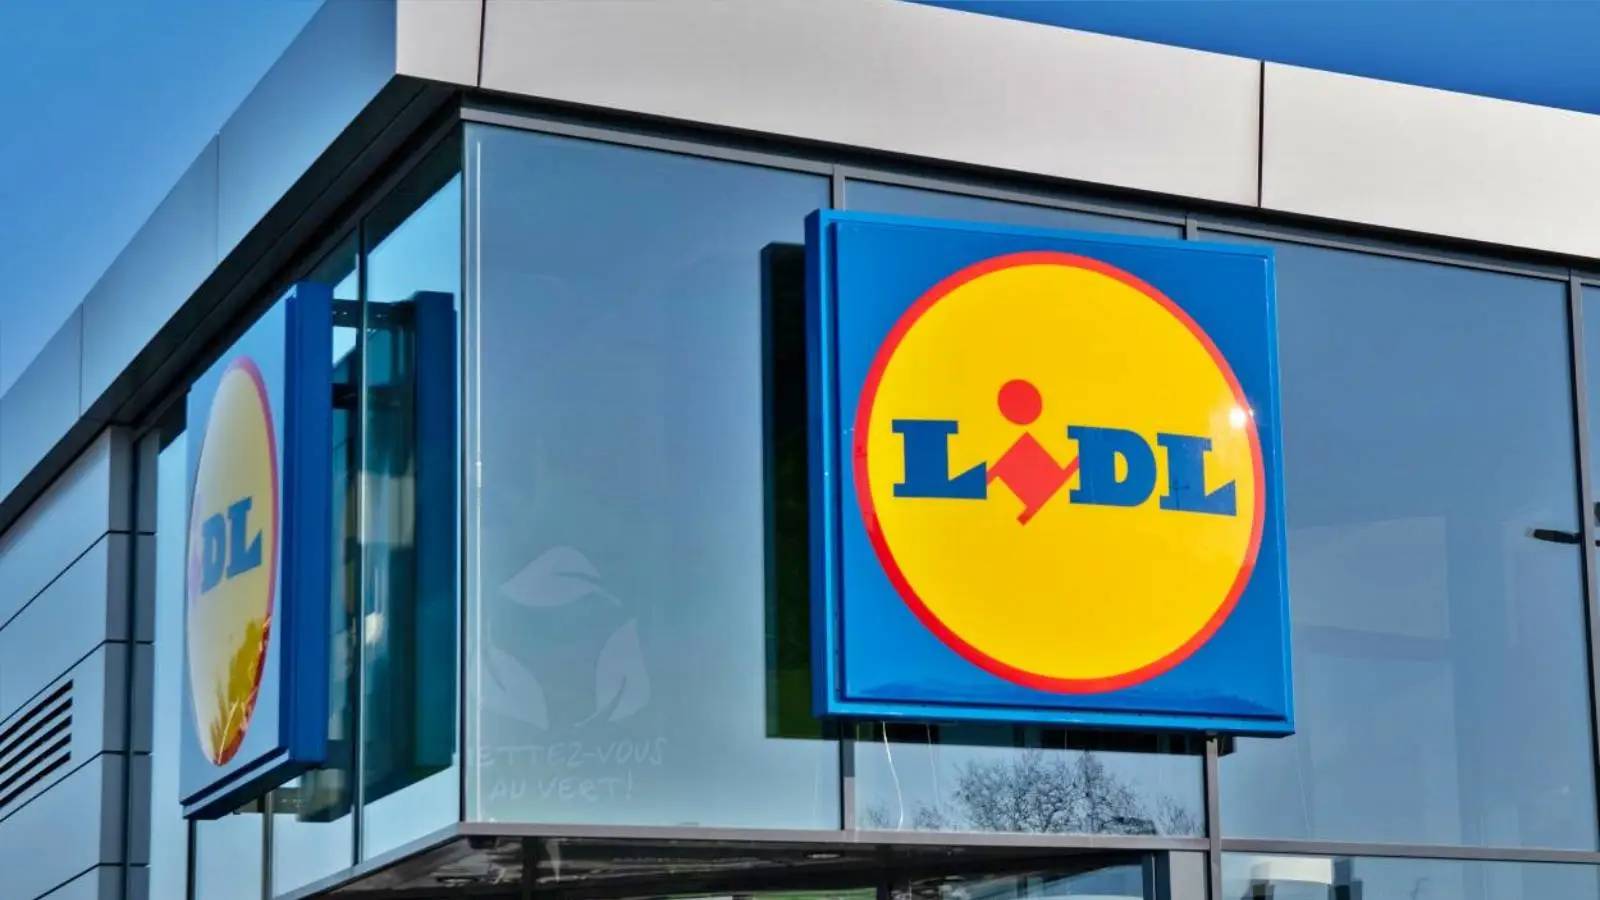 GRATIS LIDL Roemenië heeft officieel alle klanten aangekondigd